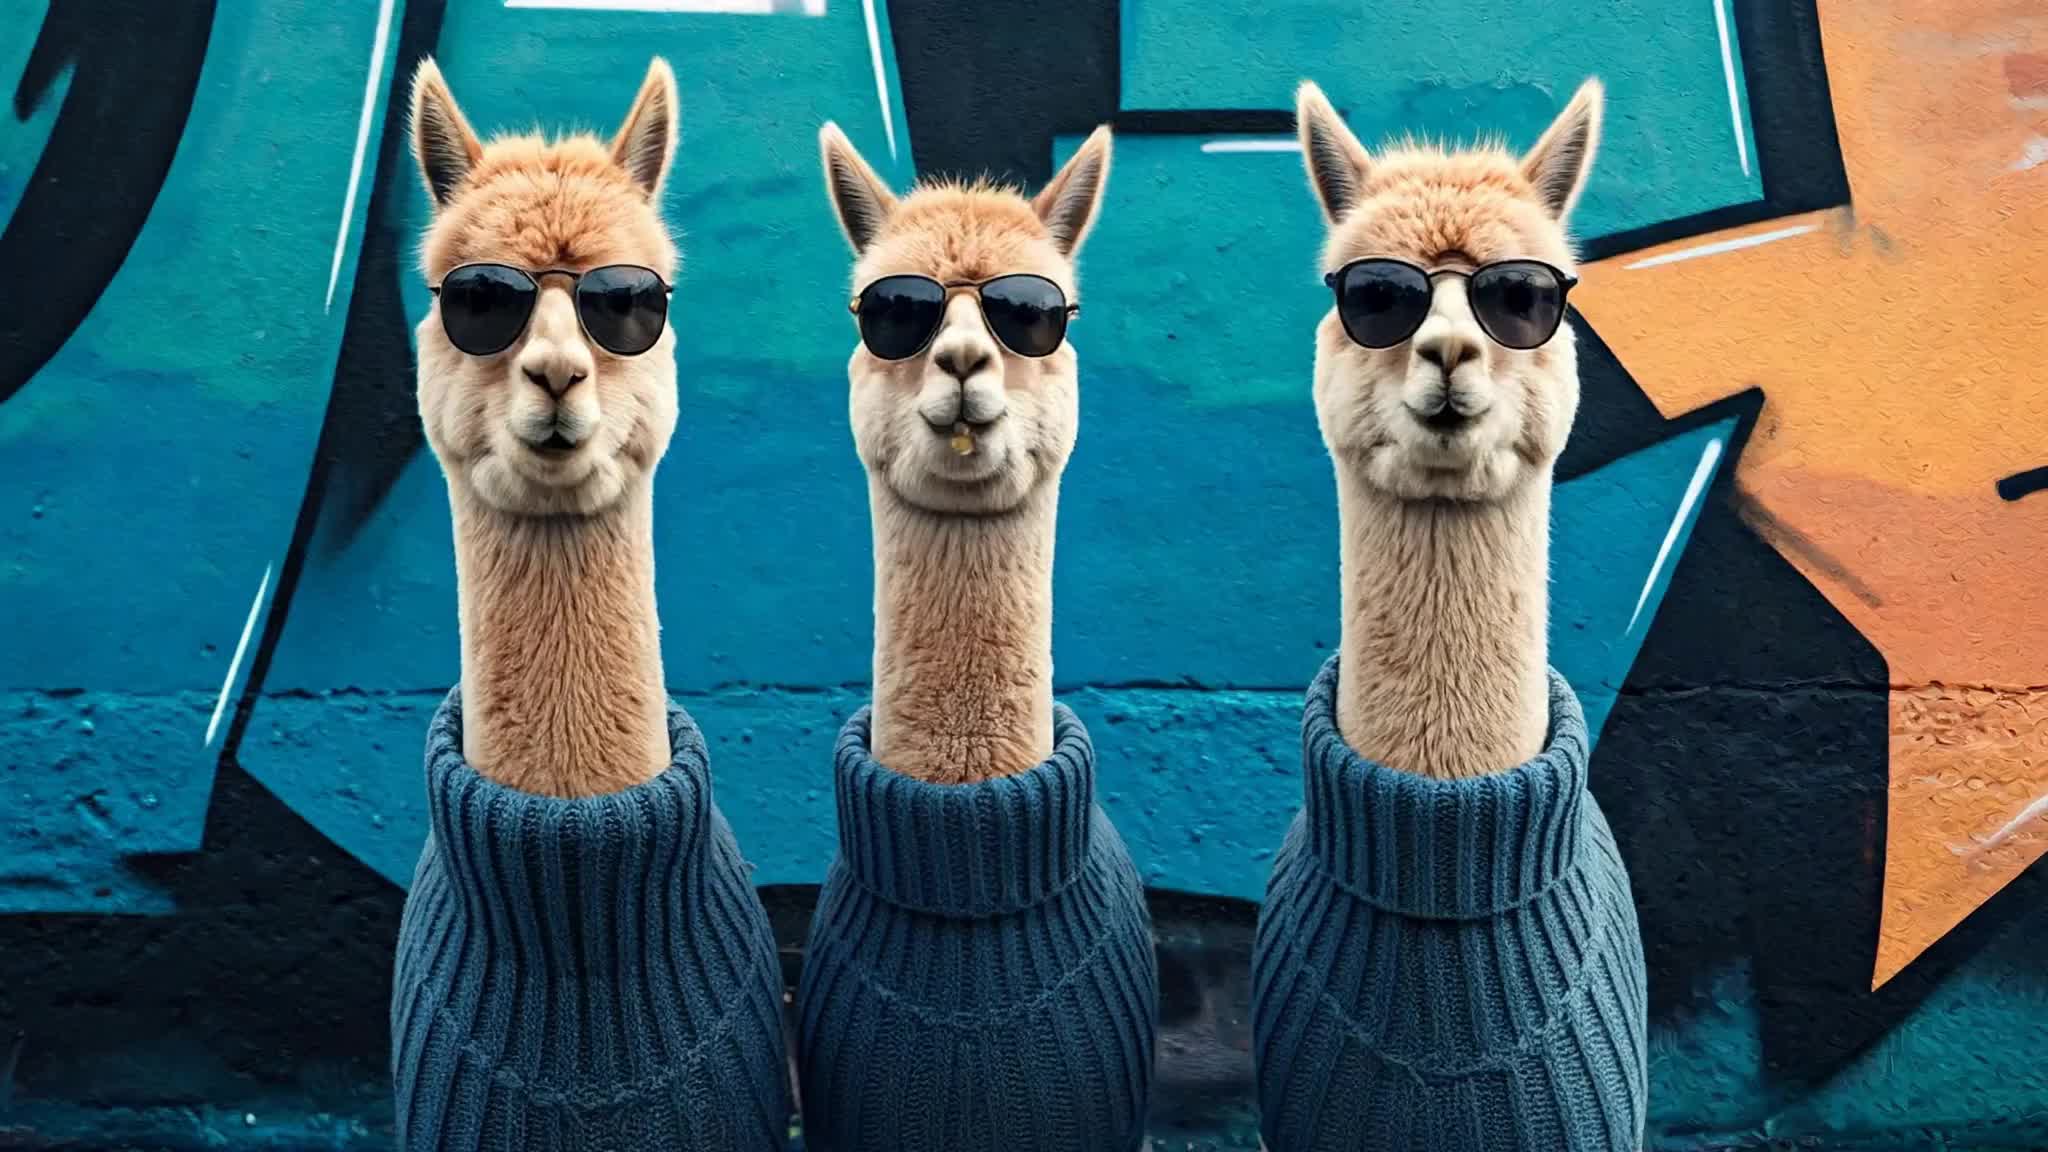 Alpacas wearing knit wool sweaters, graffiti background, sunglasses